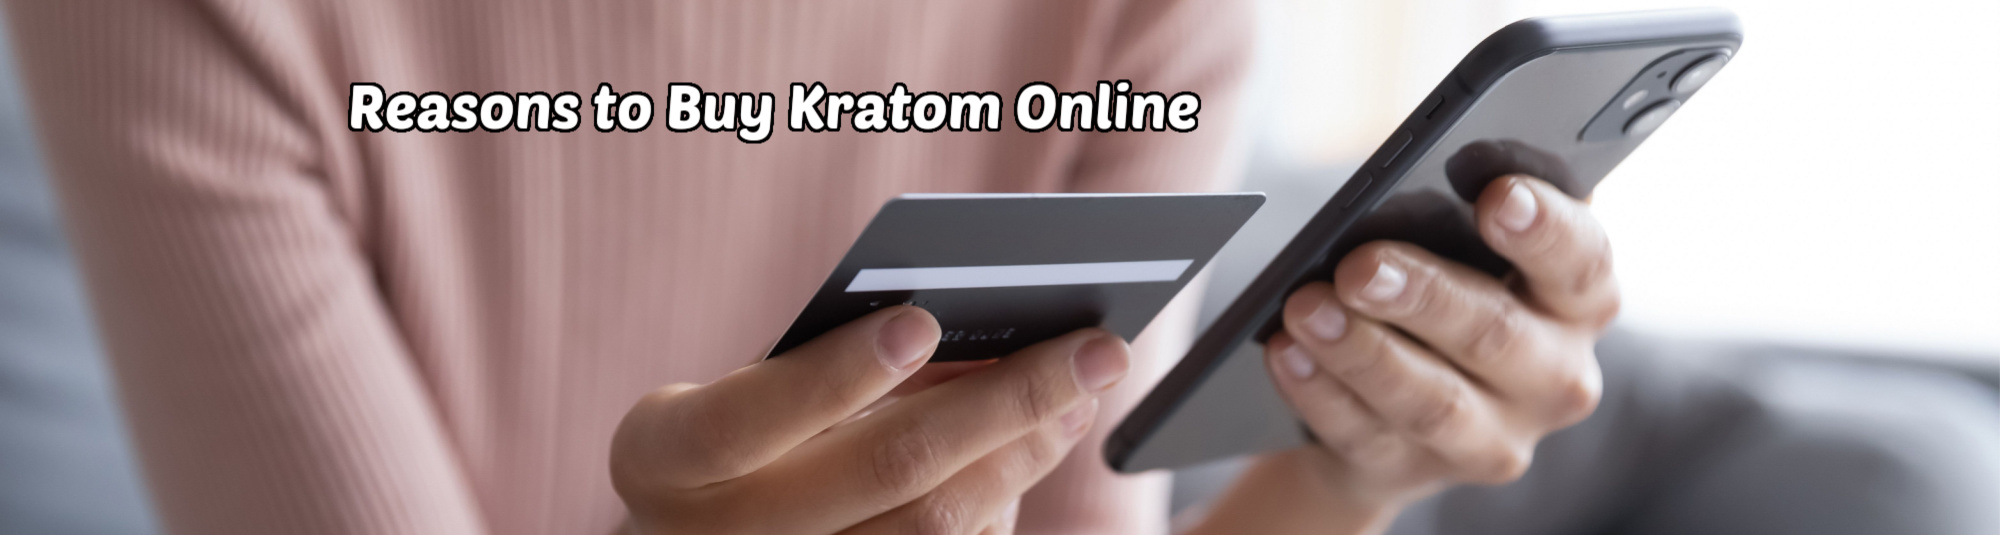 image of reasons to buy kratom online